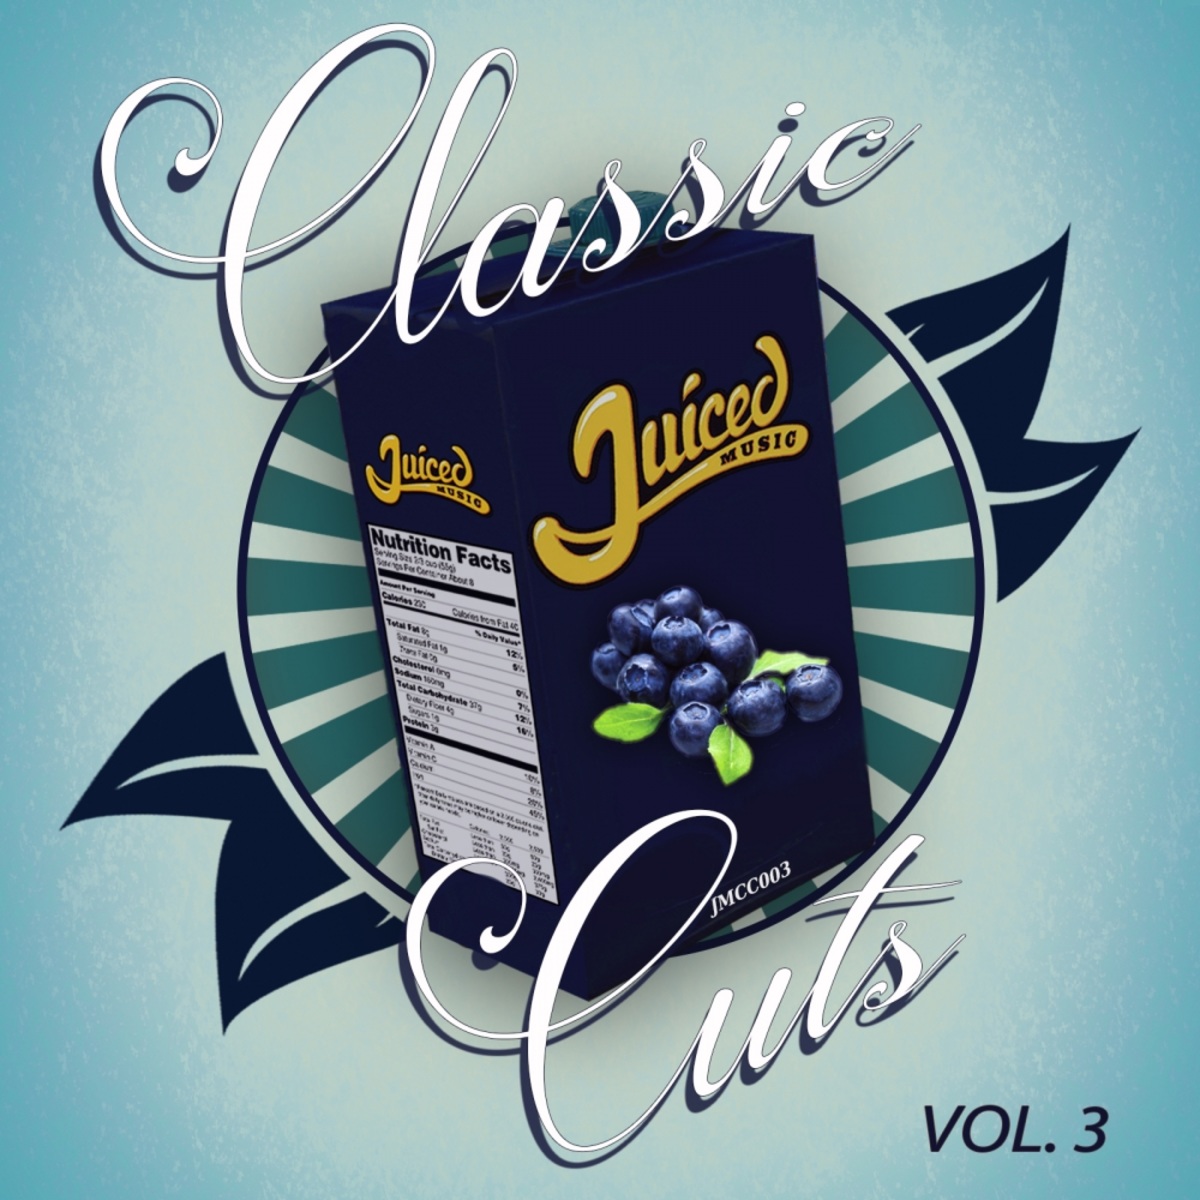 VA - Classic Cuts, Vol. 3 / Juiced Music